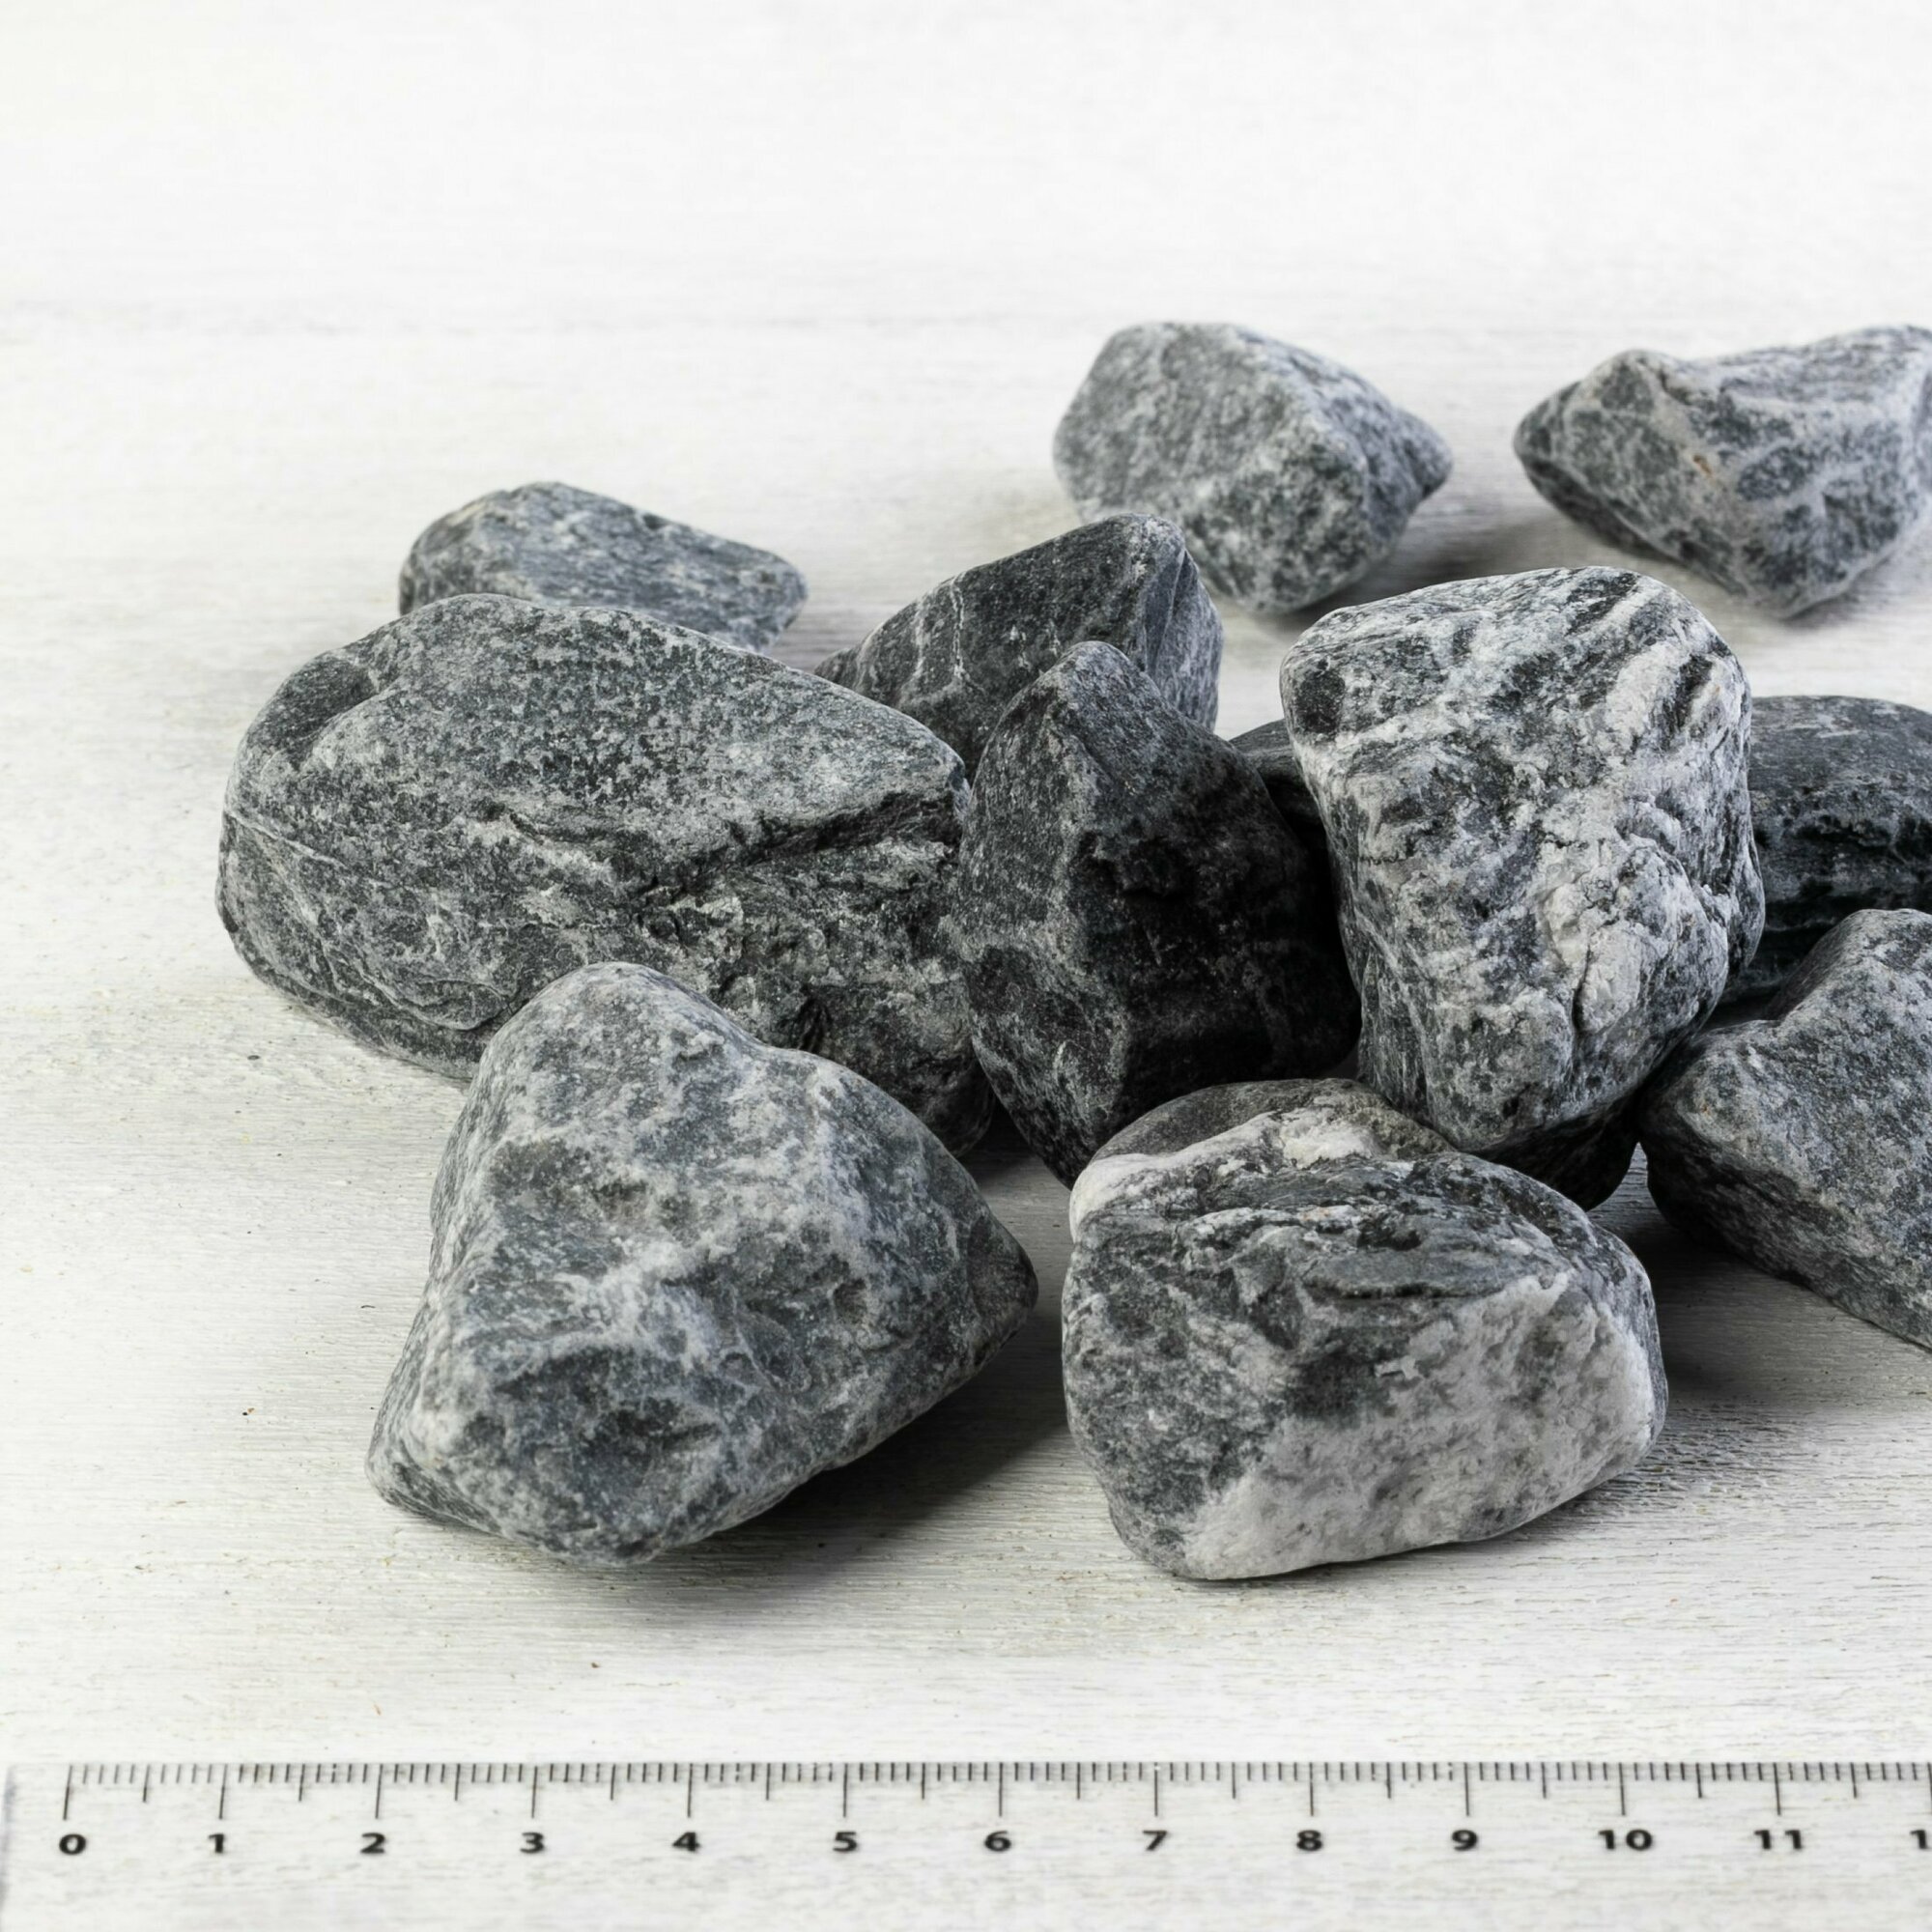 Камень ландшафтный мрамор черный Доломит, фракция 20-40 мм 10 кг (319N). Декоративный грунт, натуральный камень